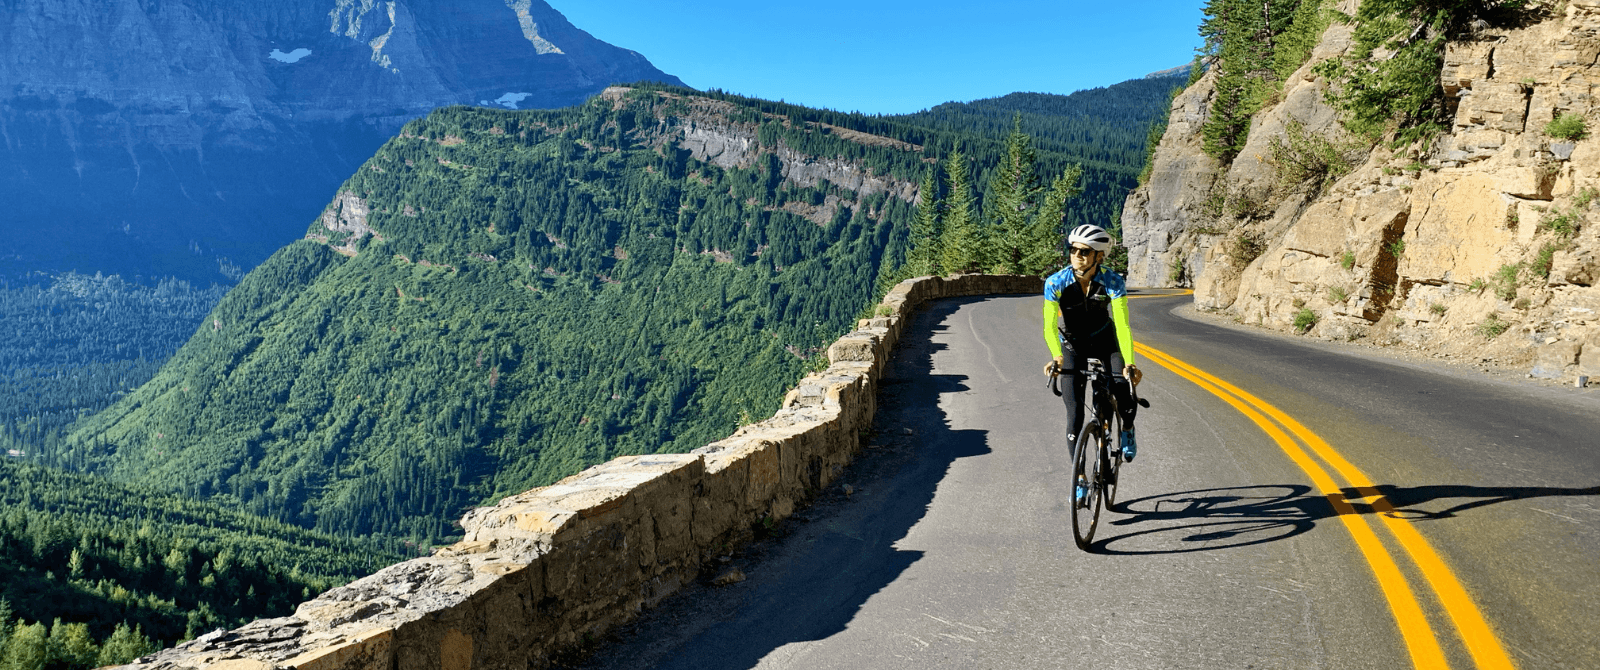 Glacier National Park Bike Tour